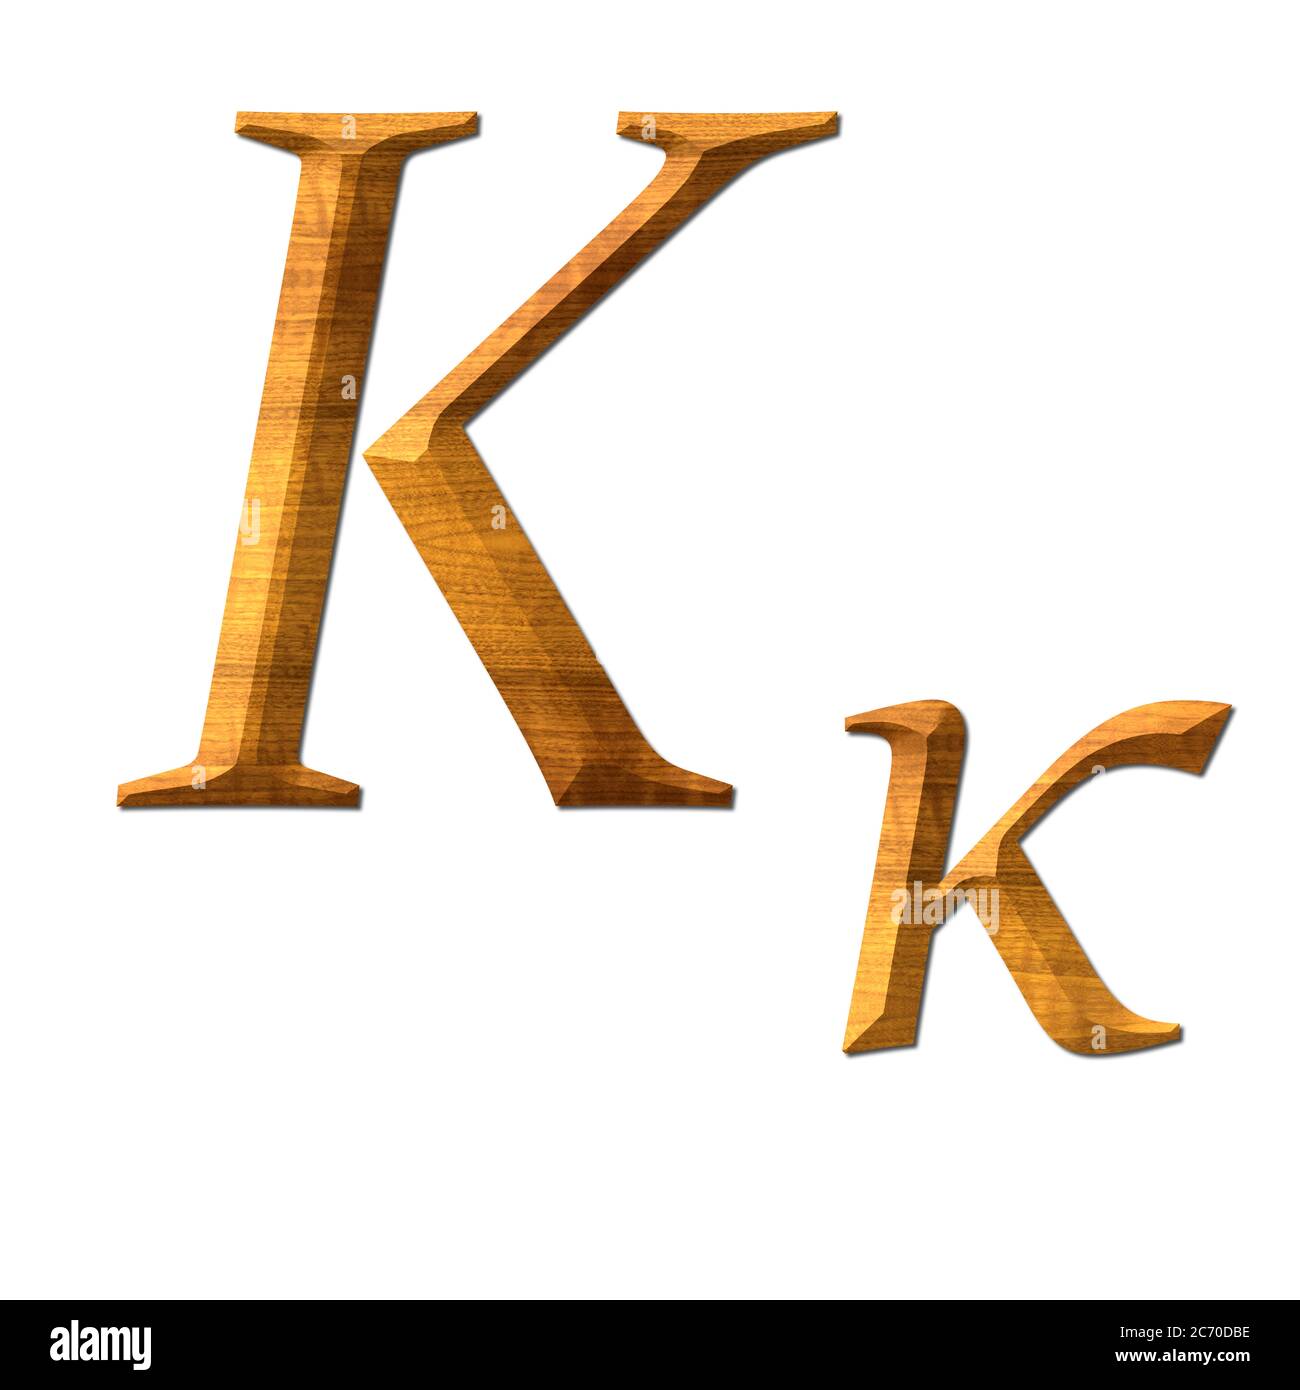 Kappa. L'alphabet grec éducation de texture en bois Photo Stock - Alamy